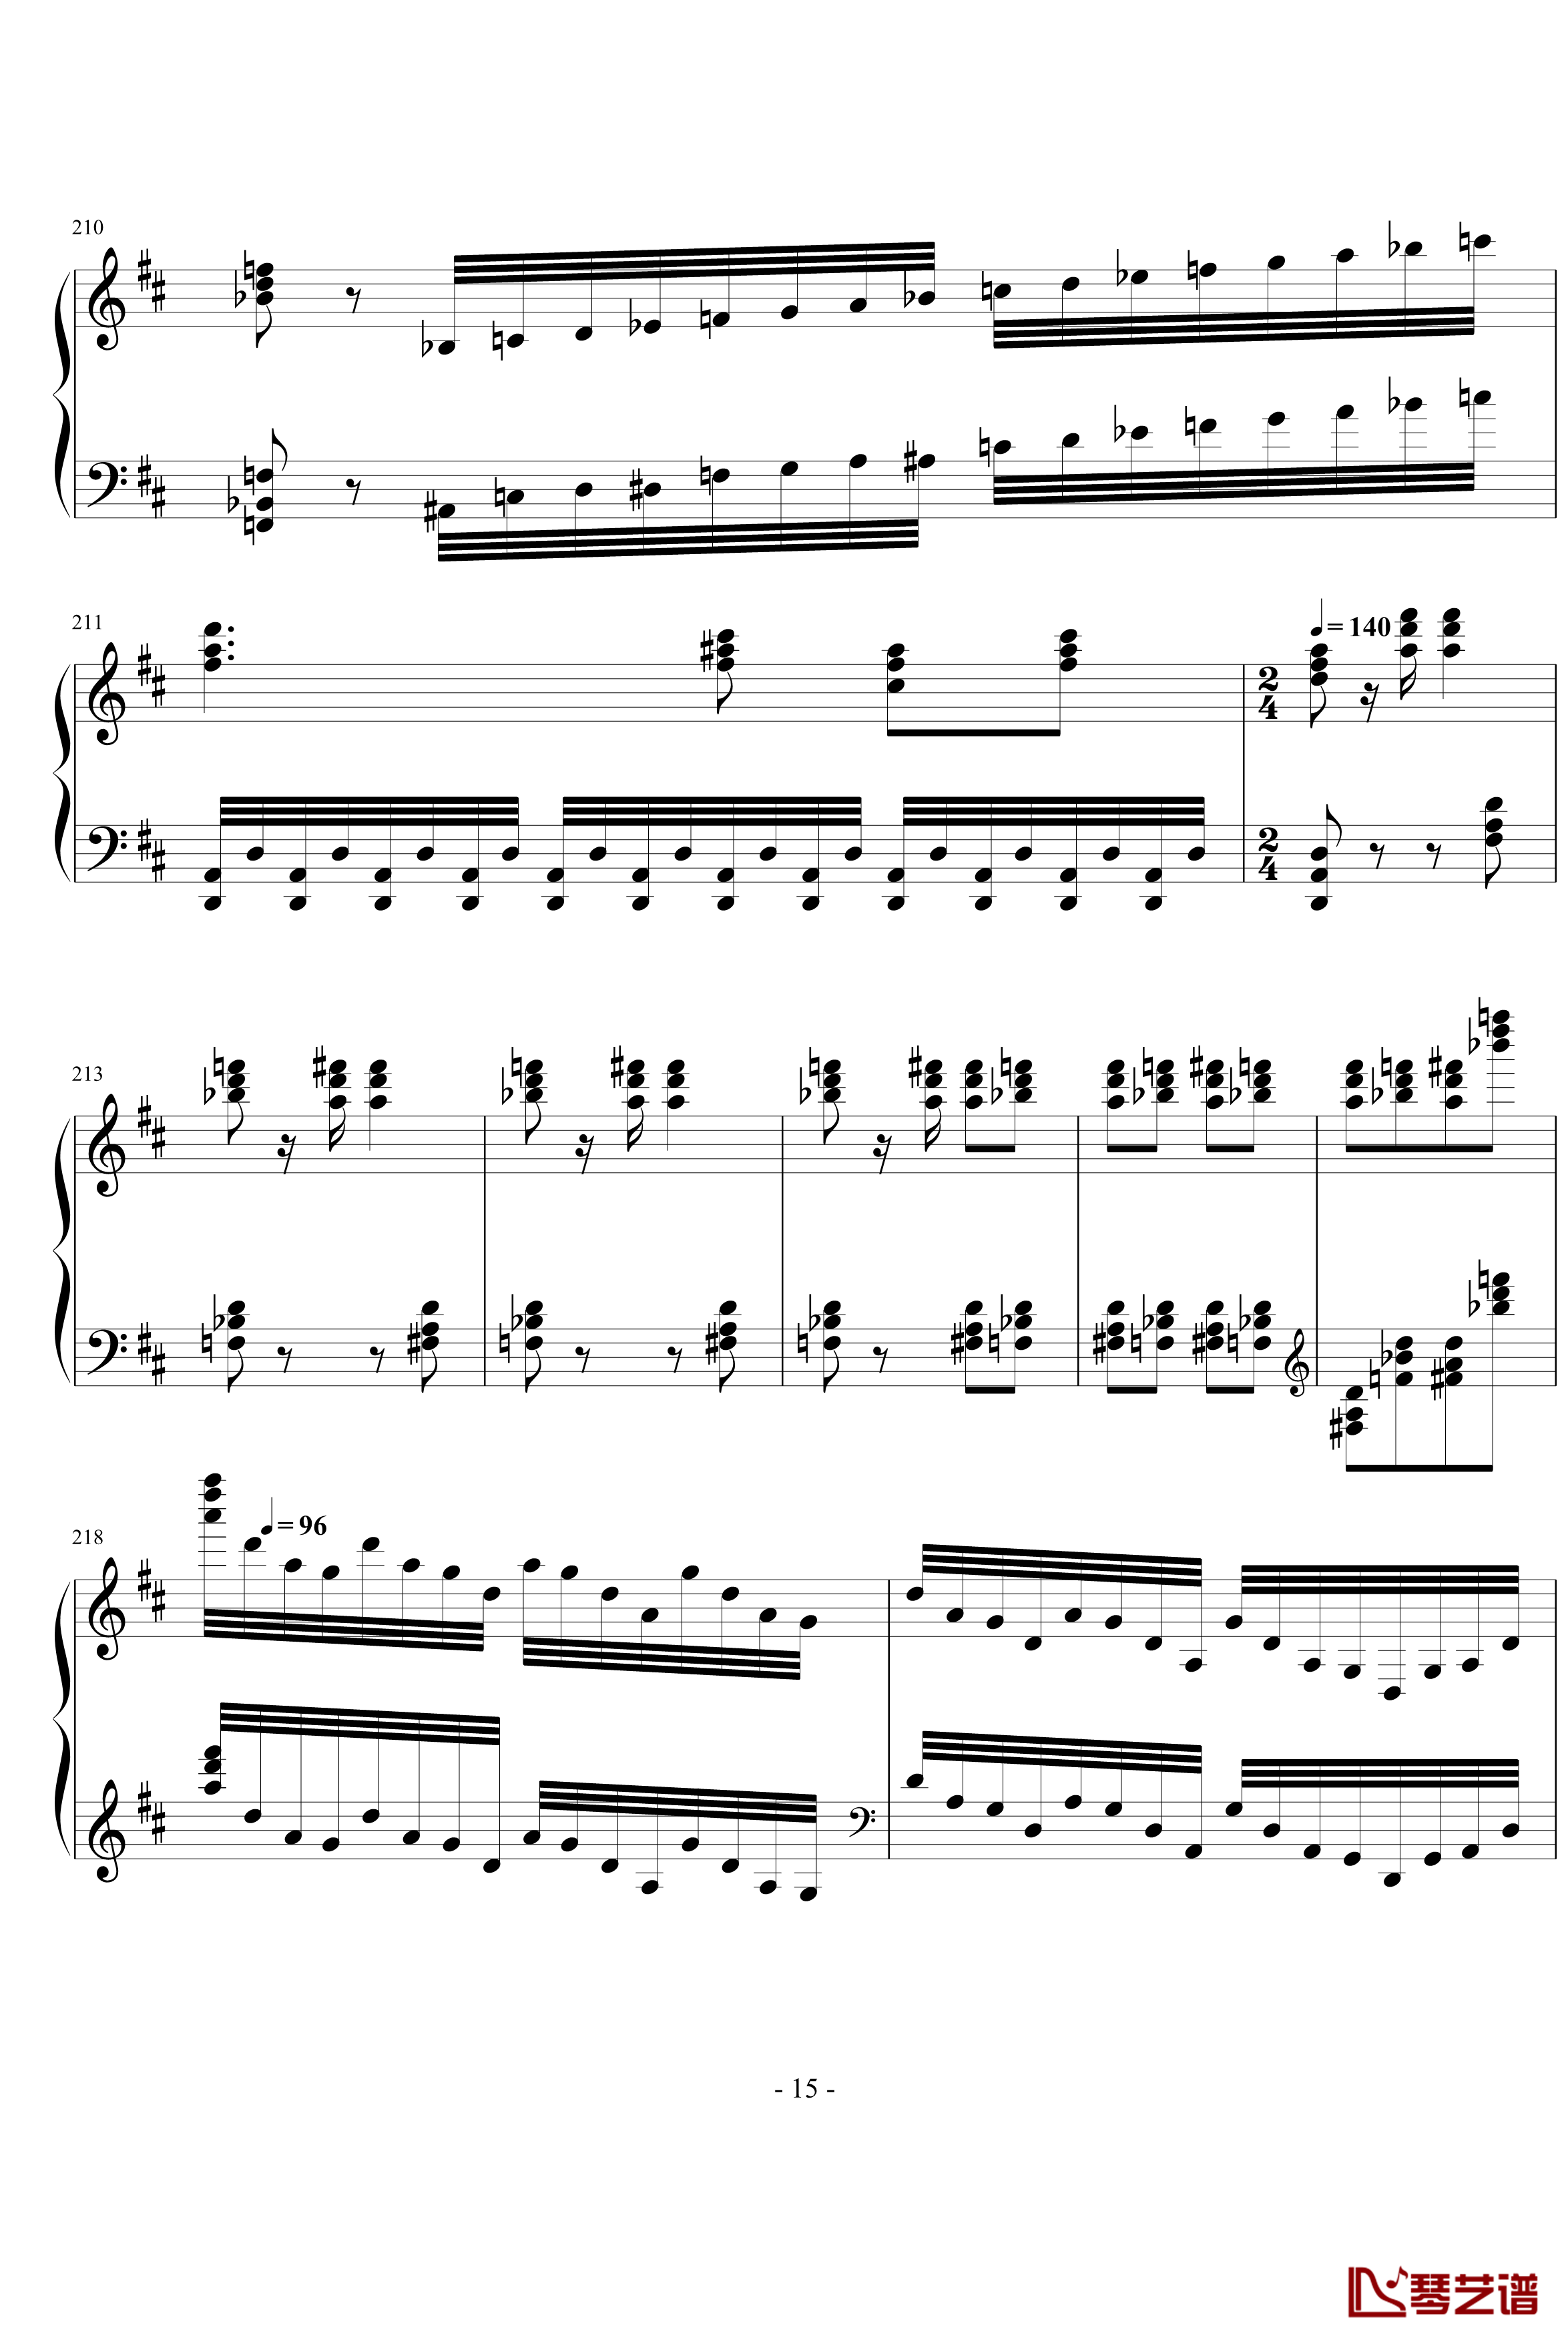 卡门幻想曲钢琴谱-世界名曲15